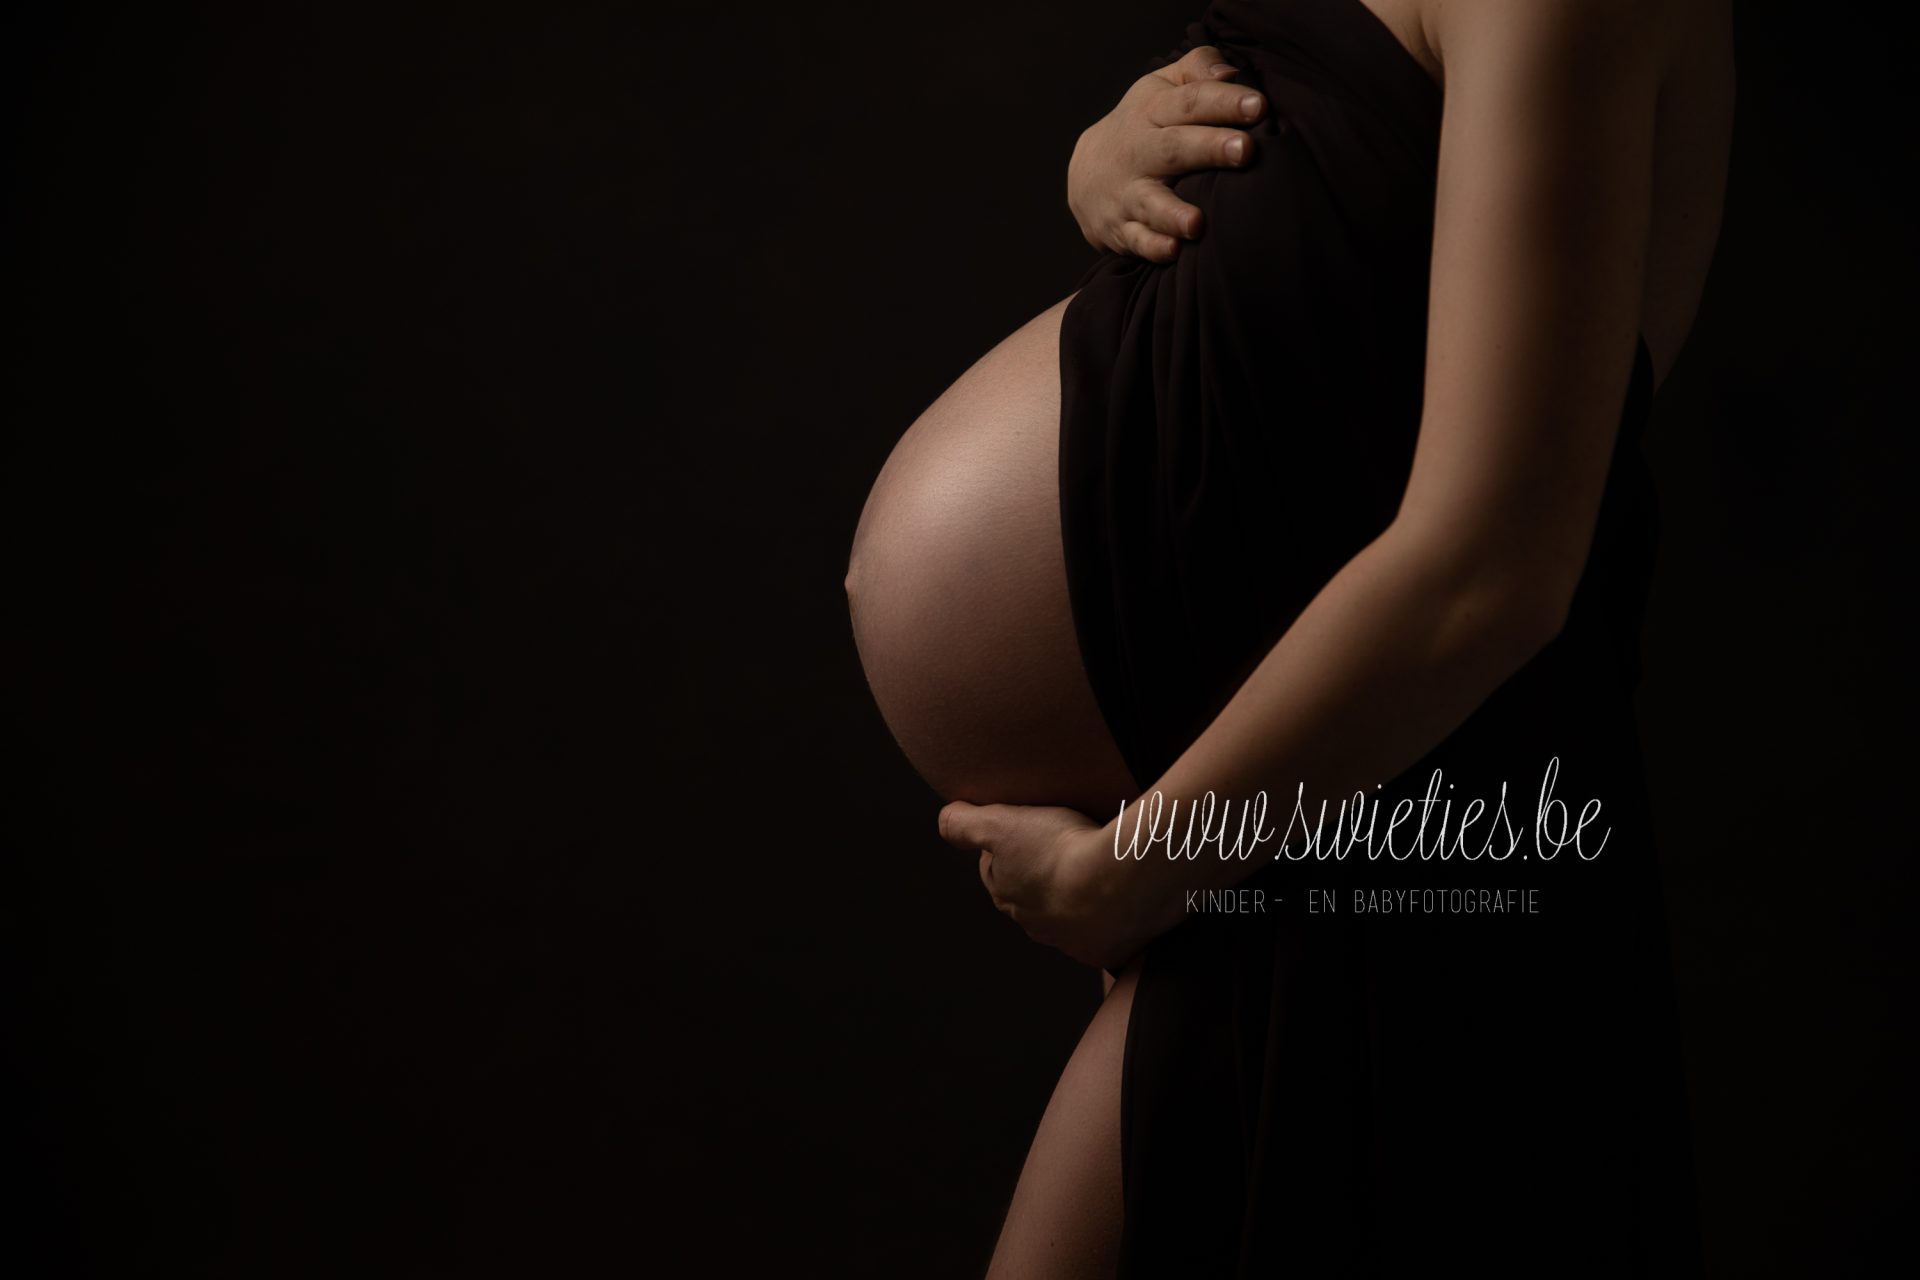 Hoe bereid je je voor op een zwangerschapsfotoshoot?